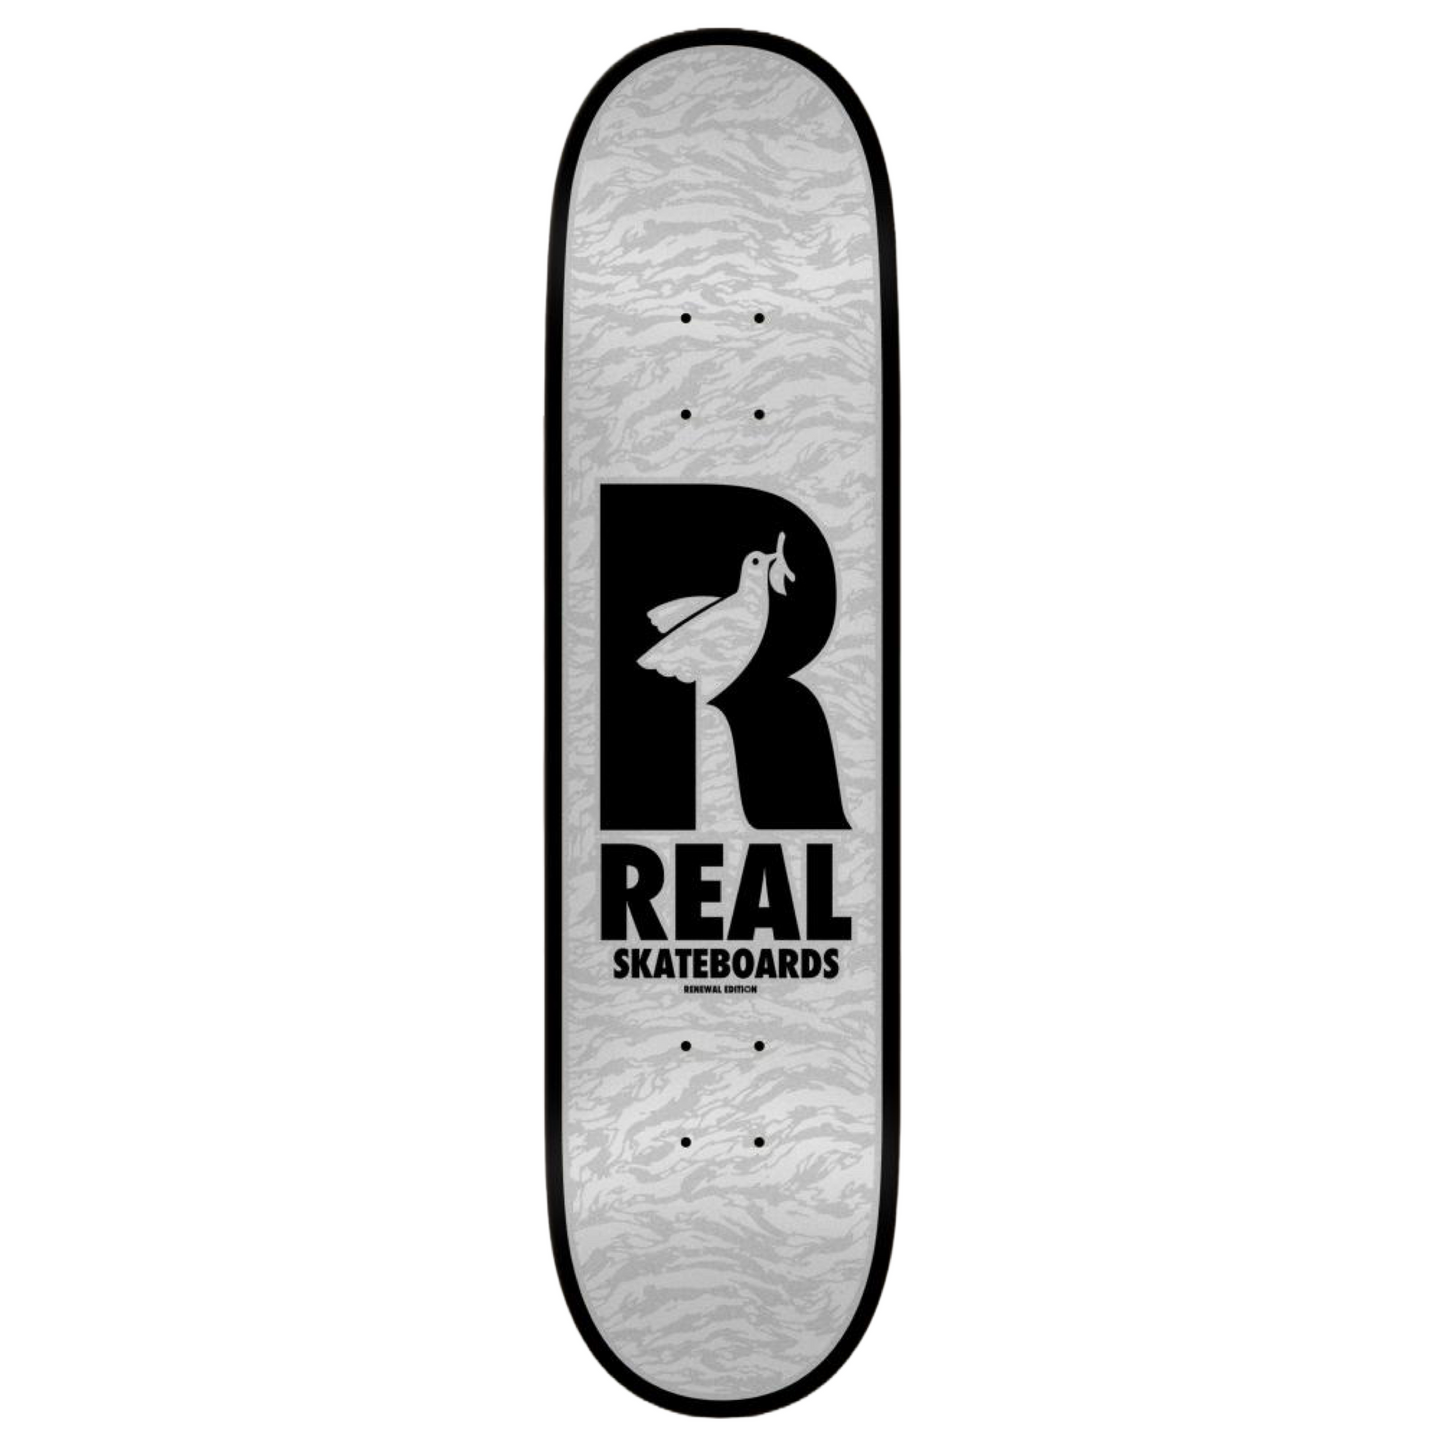 Real Skateboards - Renewal Doves 8.25" Deck (Grey)